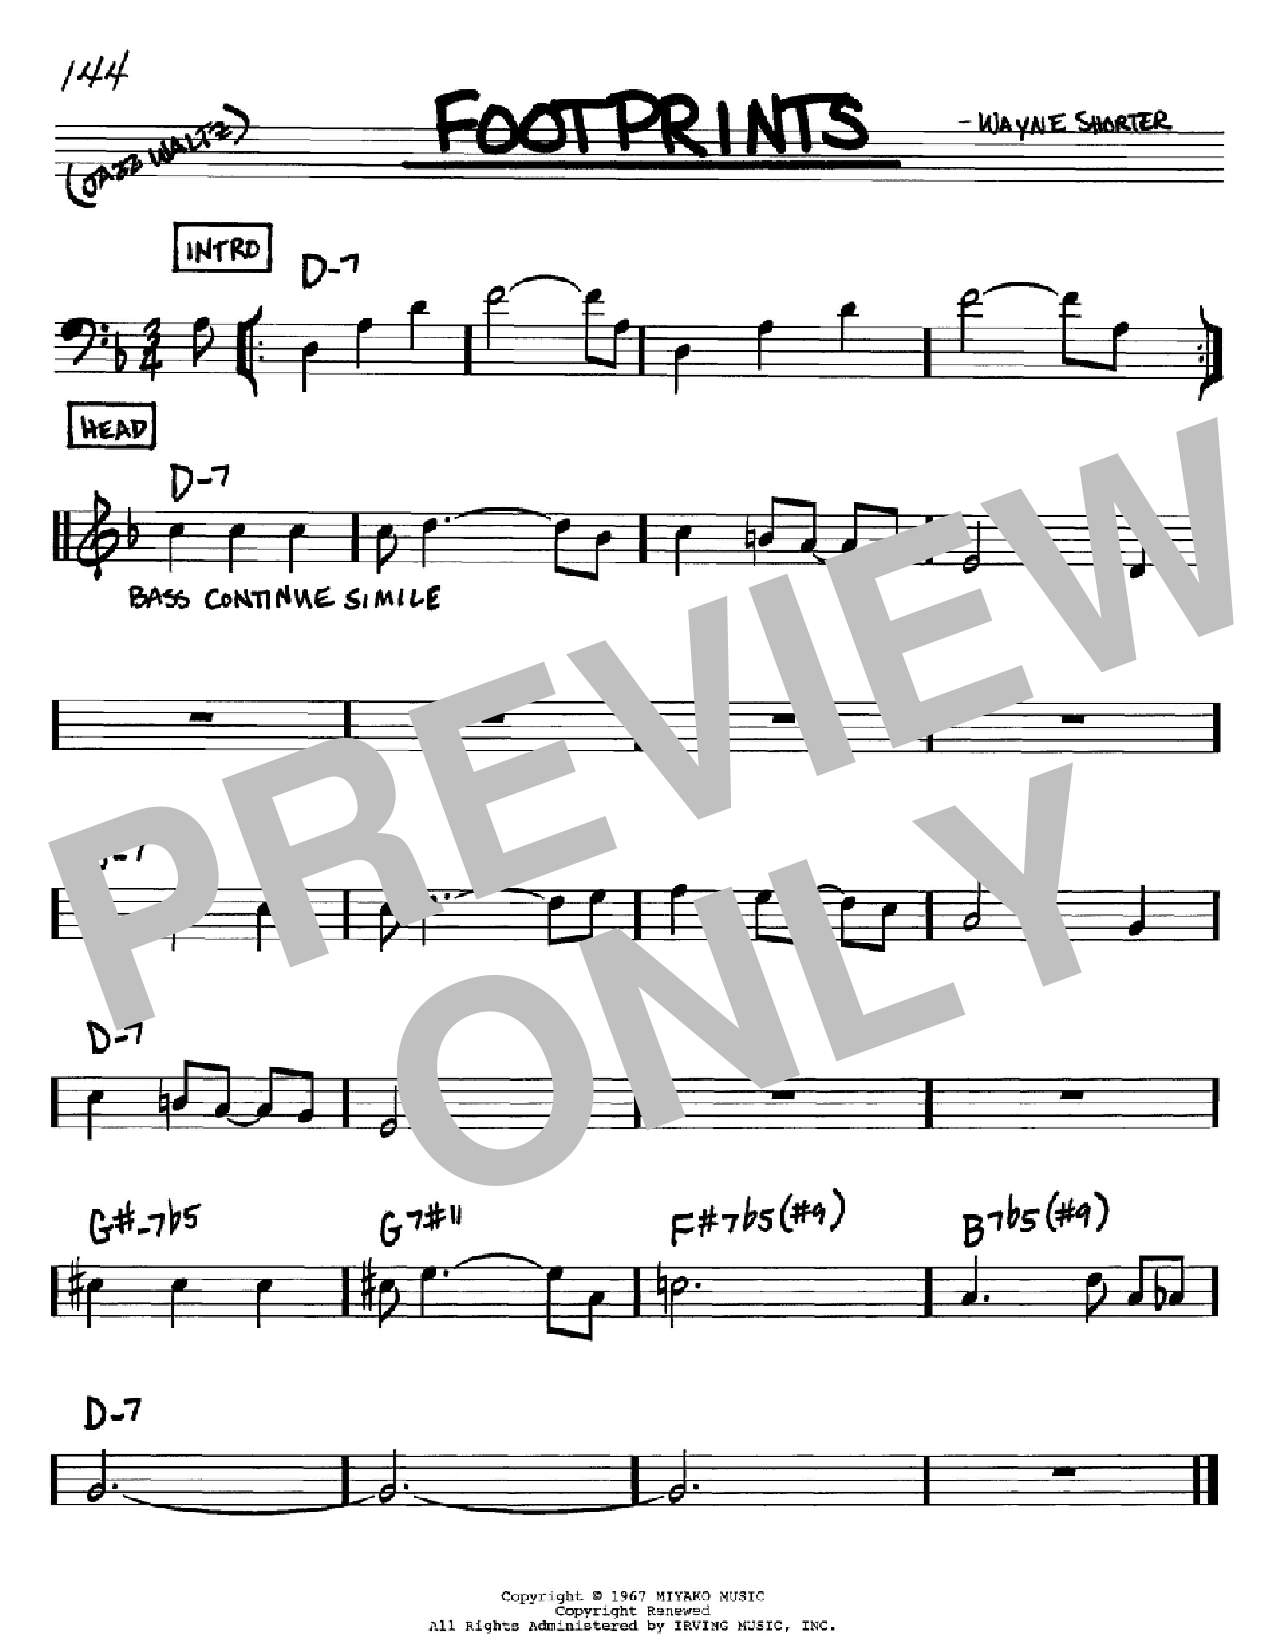 Download Wayne Shorter Footprints Sheet Music